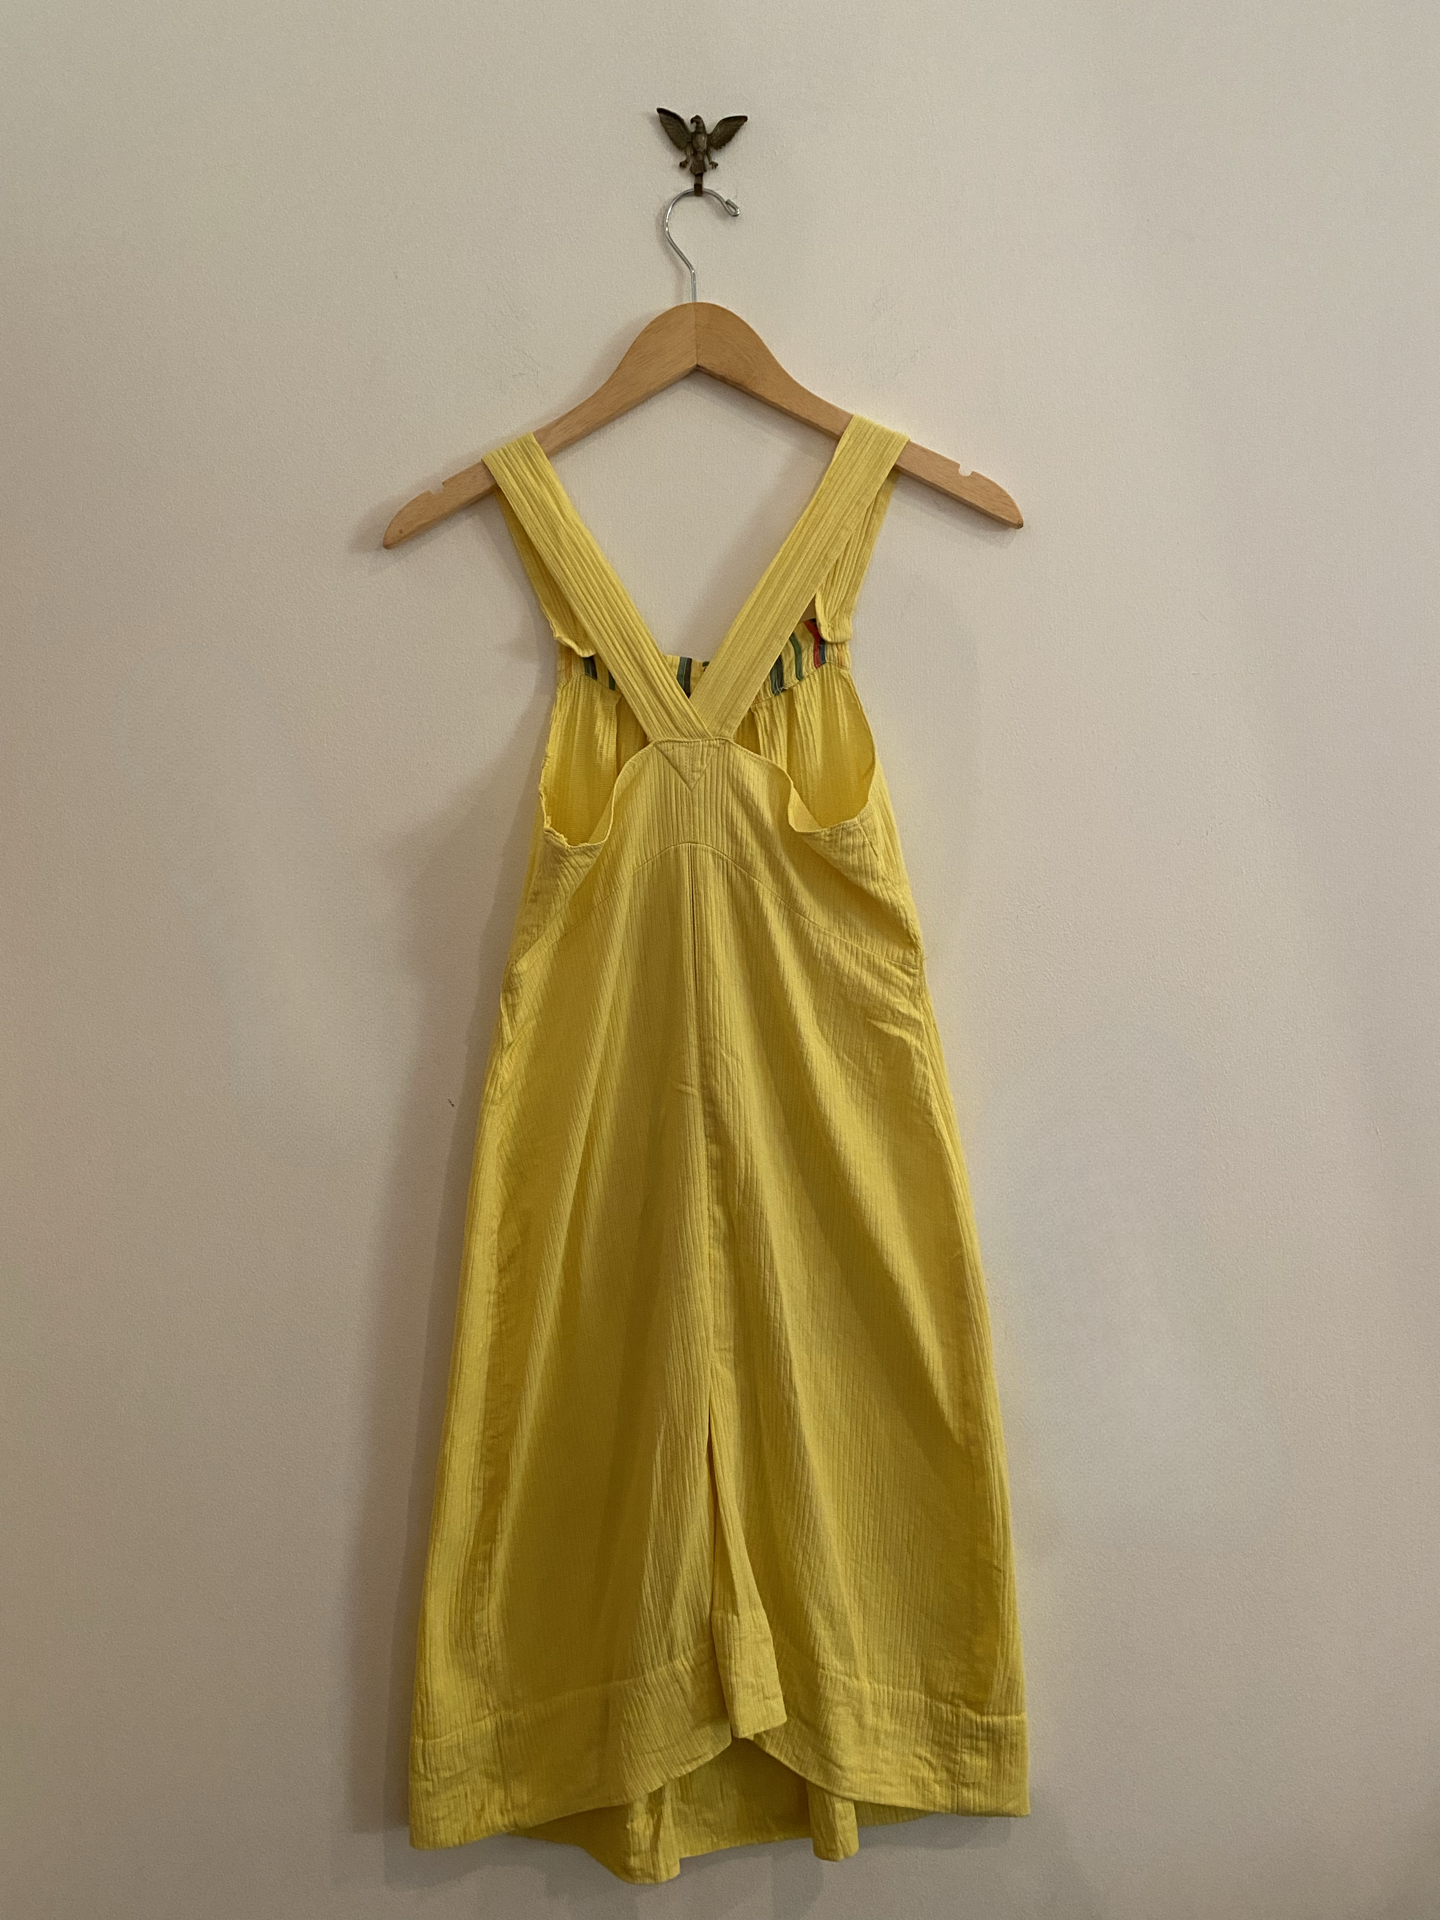 1930s Yellow Ribbed Sportswear Dress w/ Deco Pockets- S/M